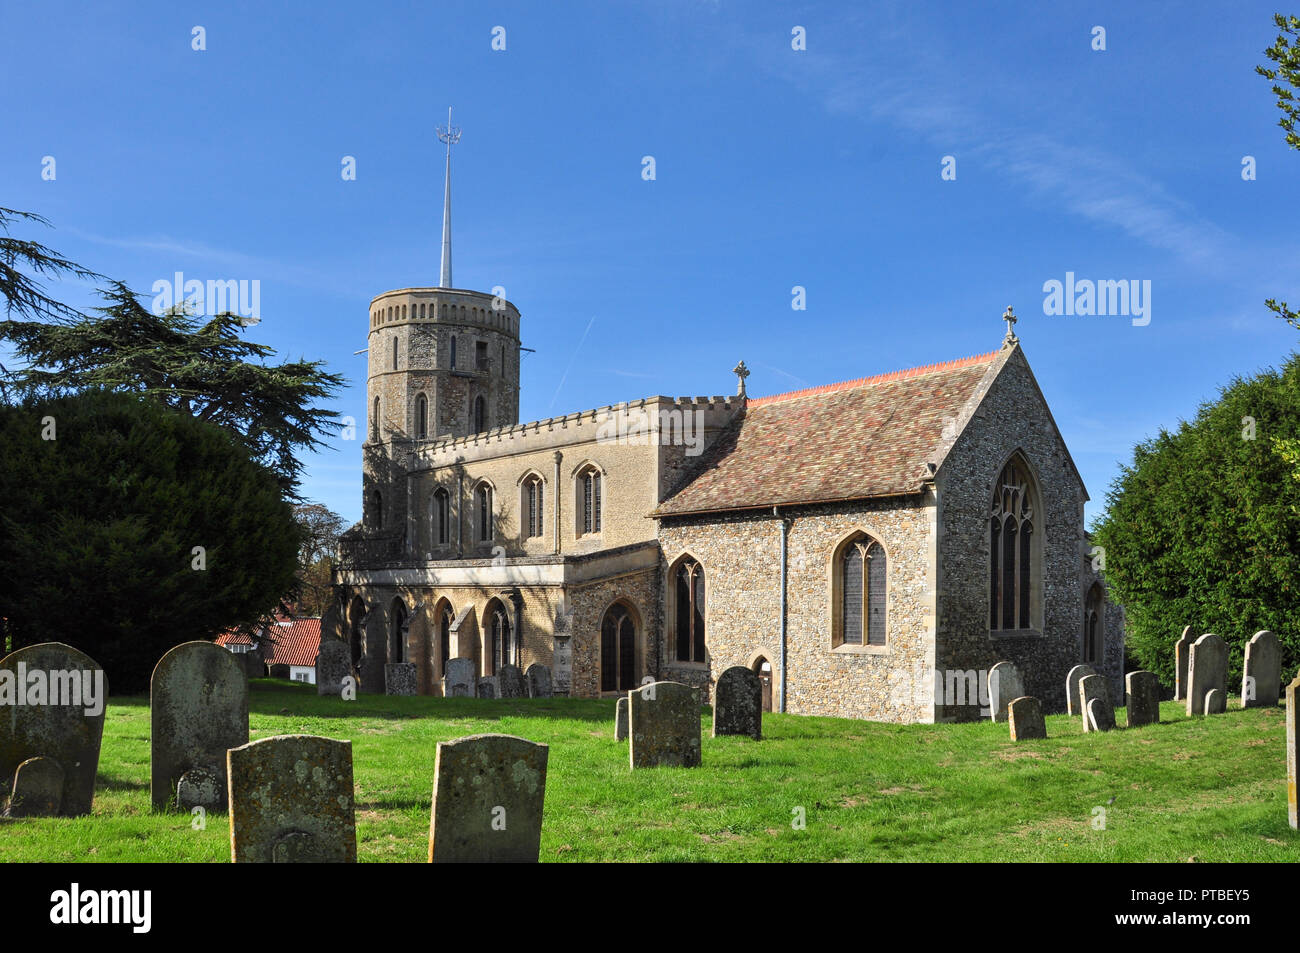 Church of St Mary, Swaffham Prior, Cambridgeshire, England, UK Stock Photo